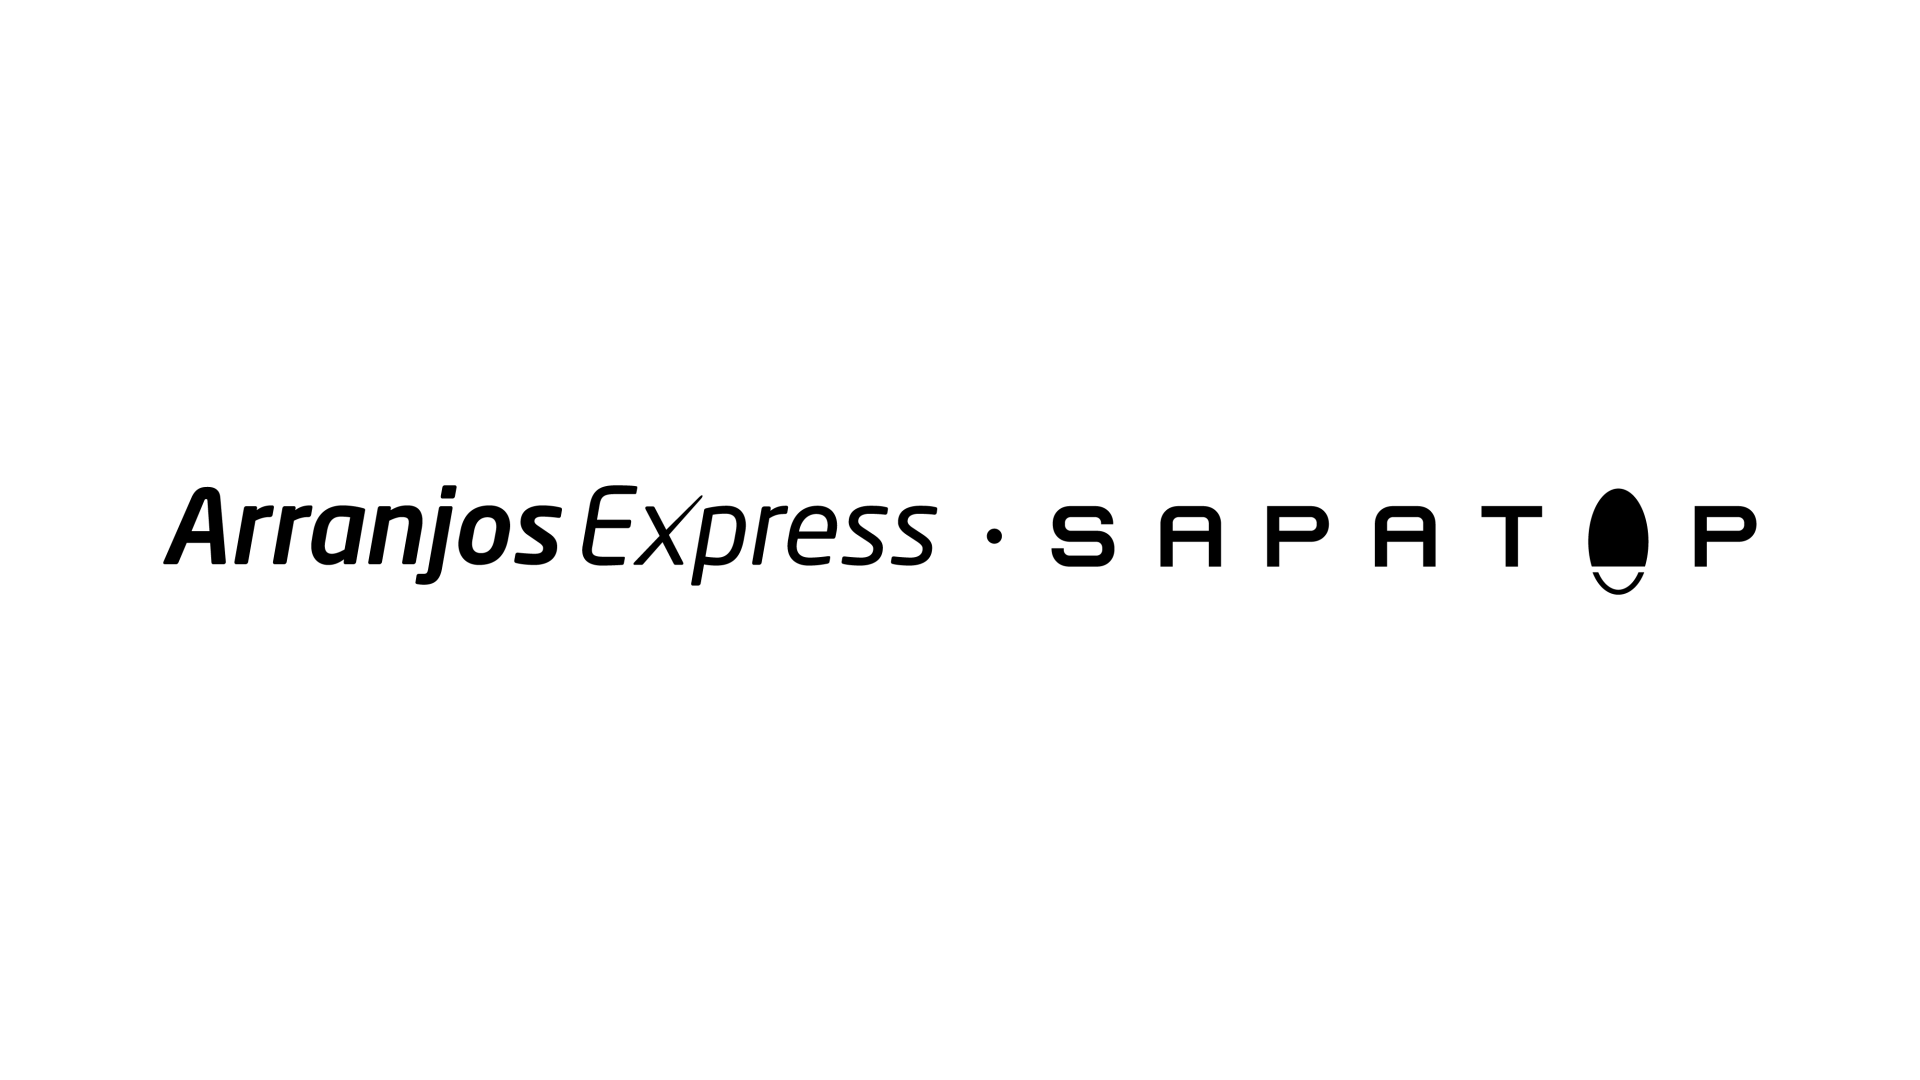 Arranjos Express Sapatop 5236